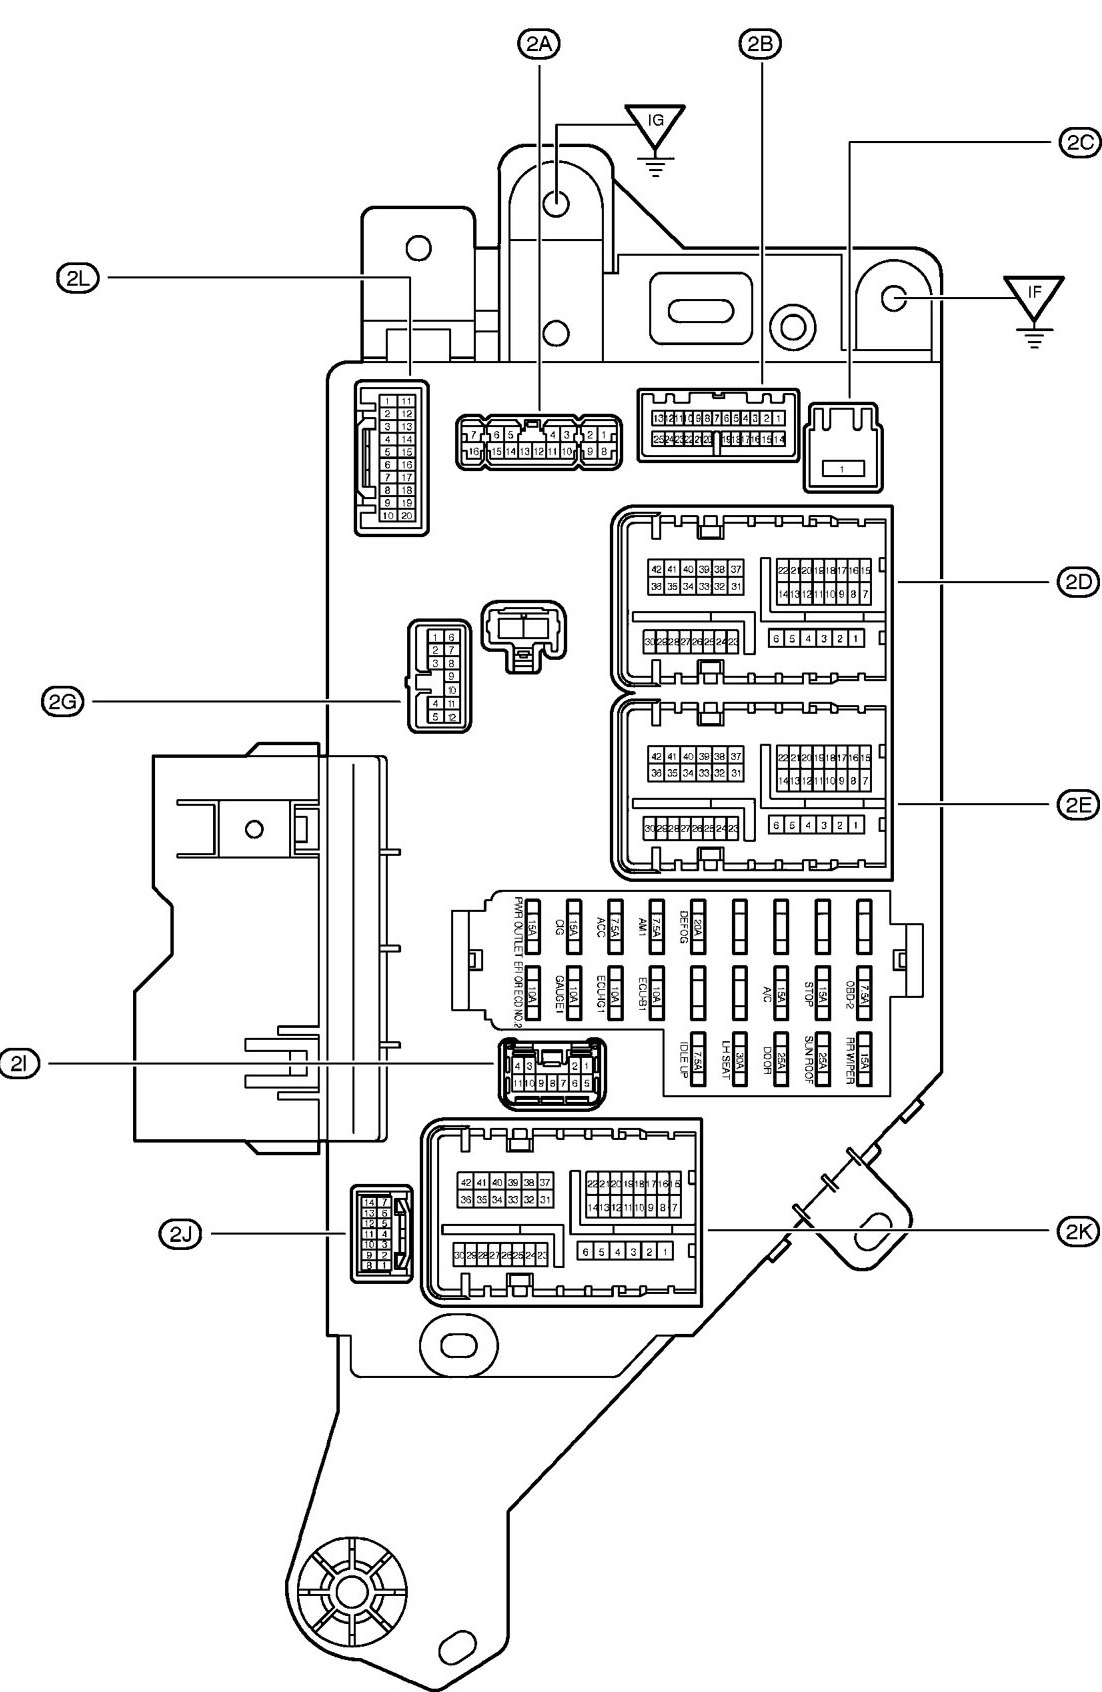 105 Series Land Cruiser Fuse Box Diagram - Wiring Diagram ...